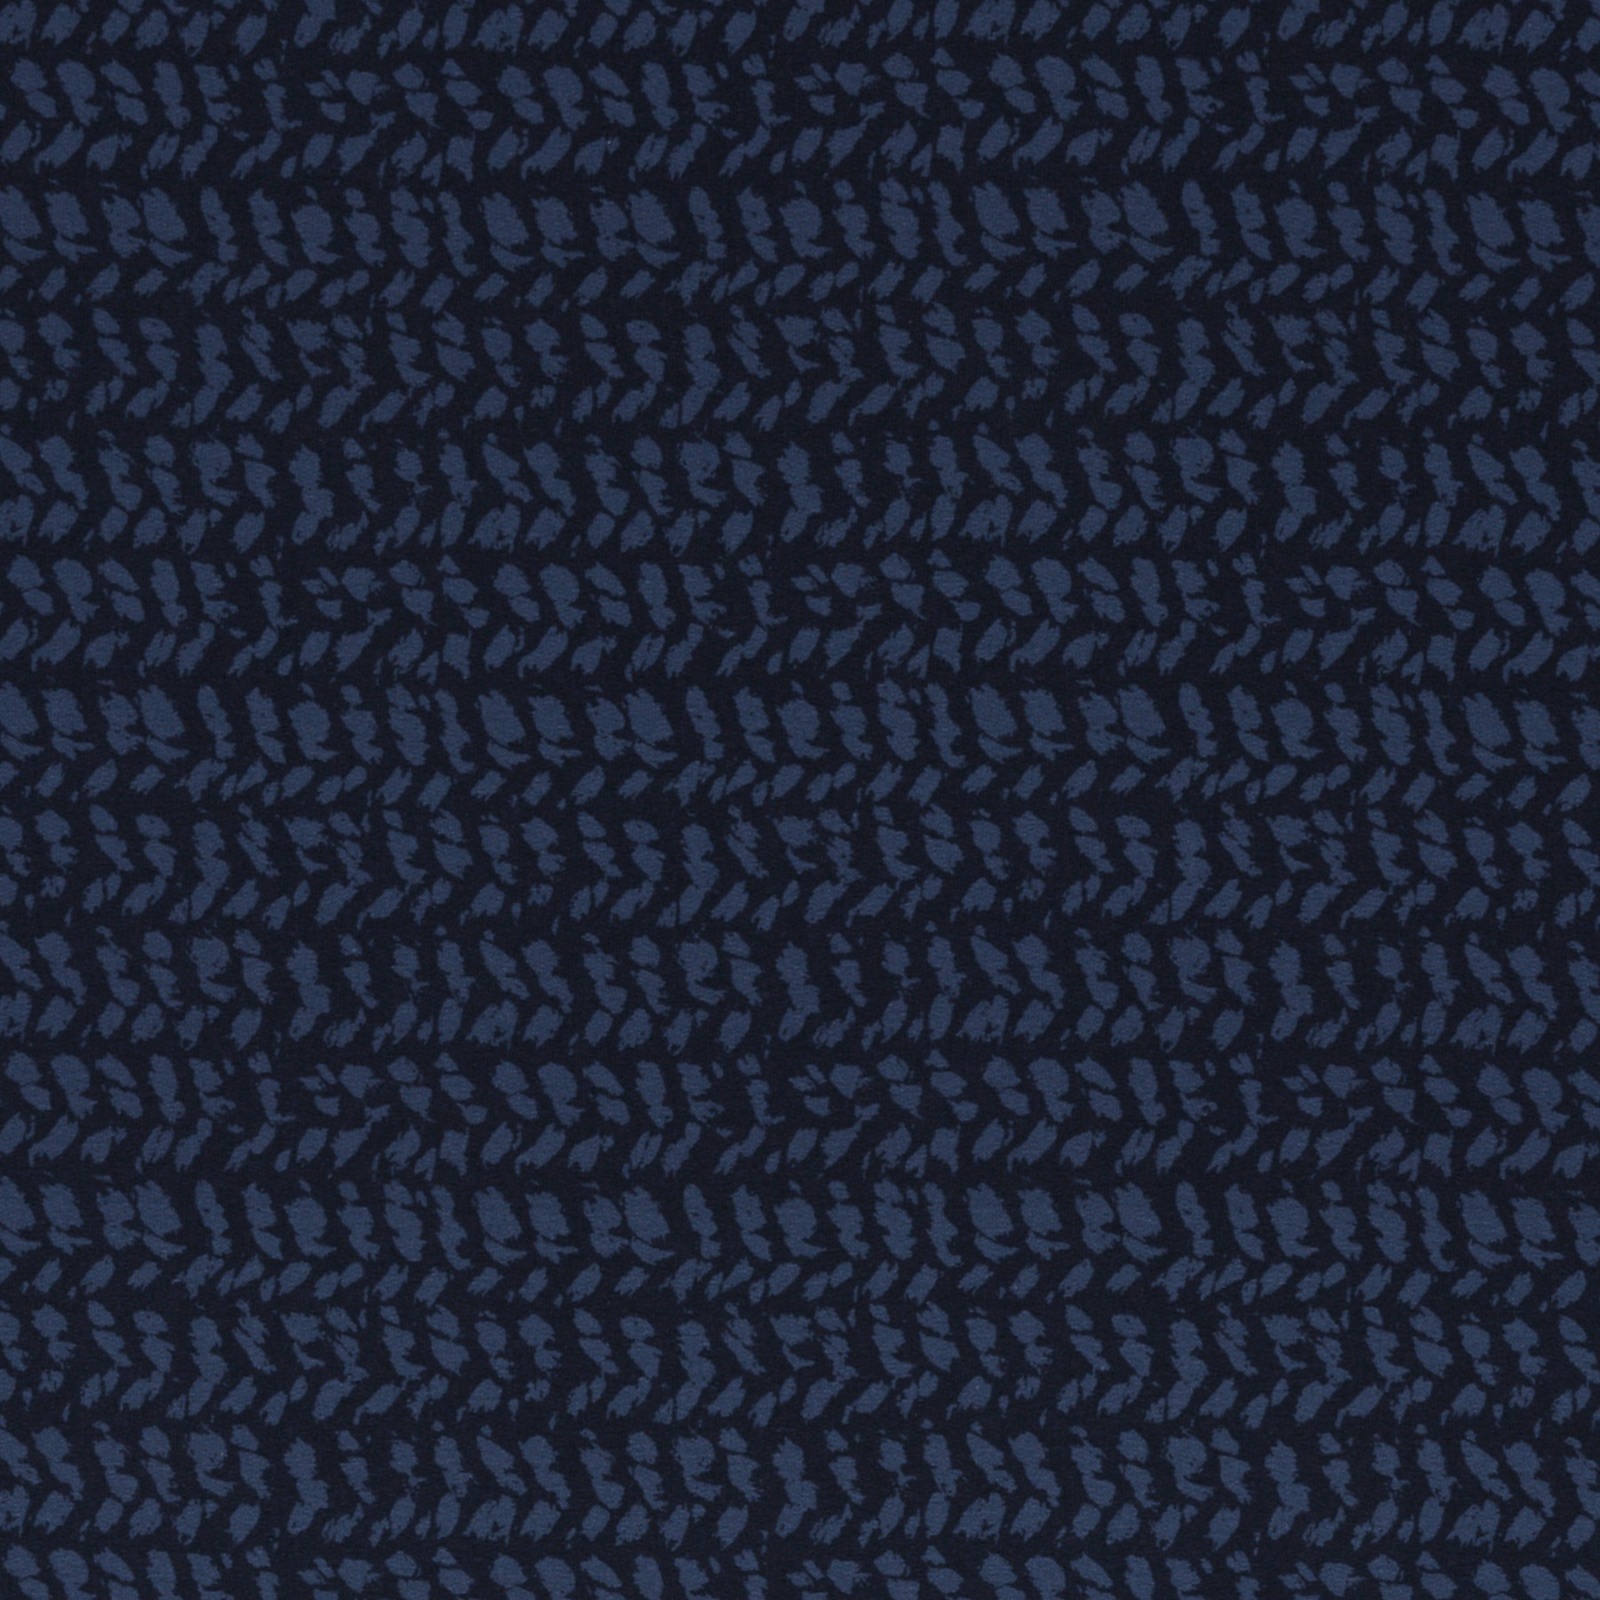 05m Sweat Herringbone Knit by Käselotti navy 5